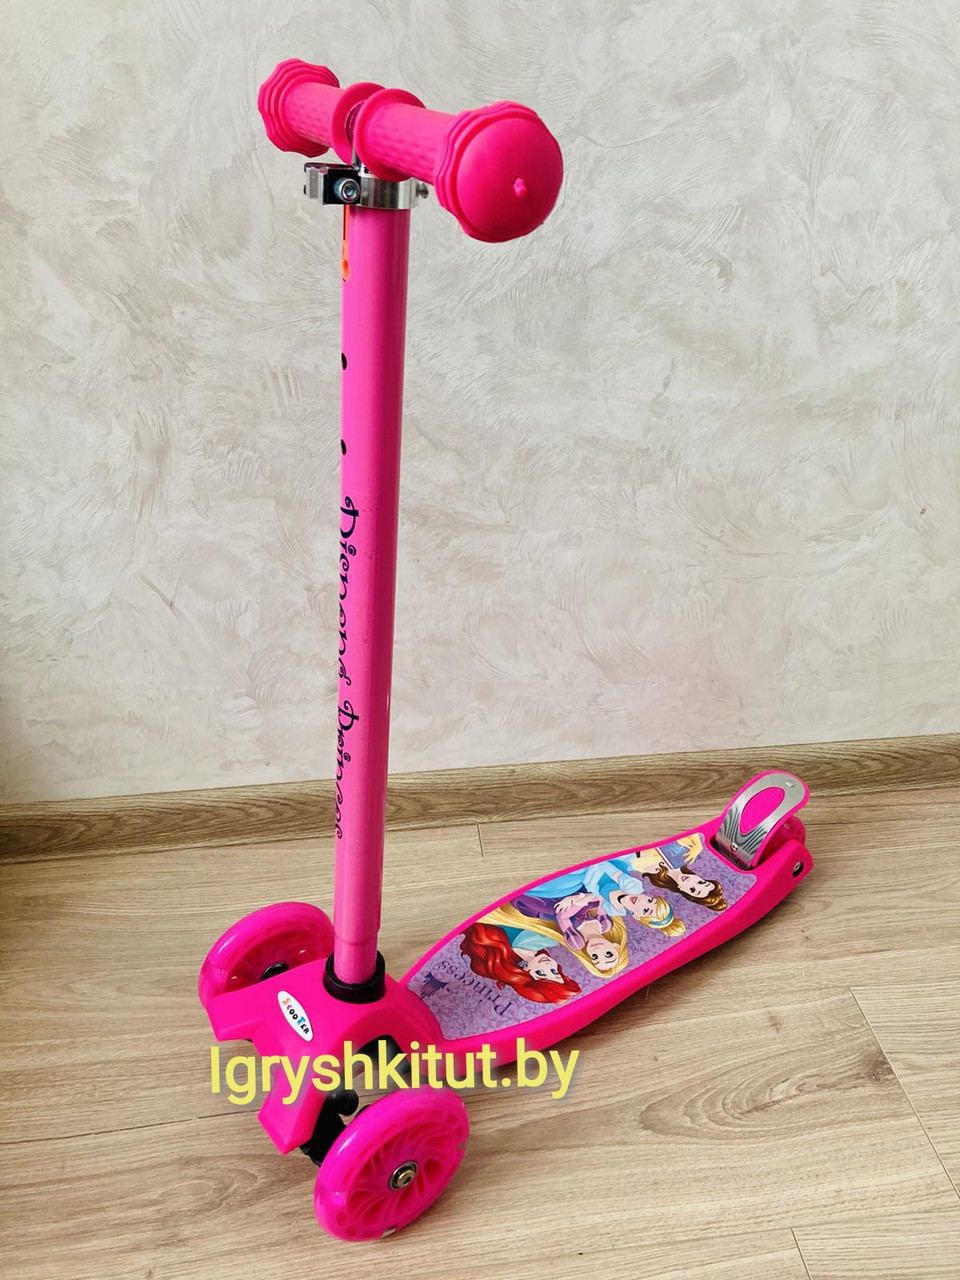 Самокат maxi  Scooter розовый с рисунком ПРИНЦЕССЫ(макси скутер ), фото 1